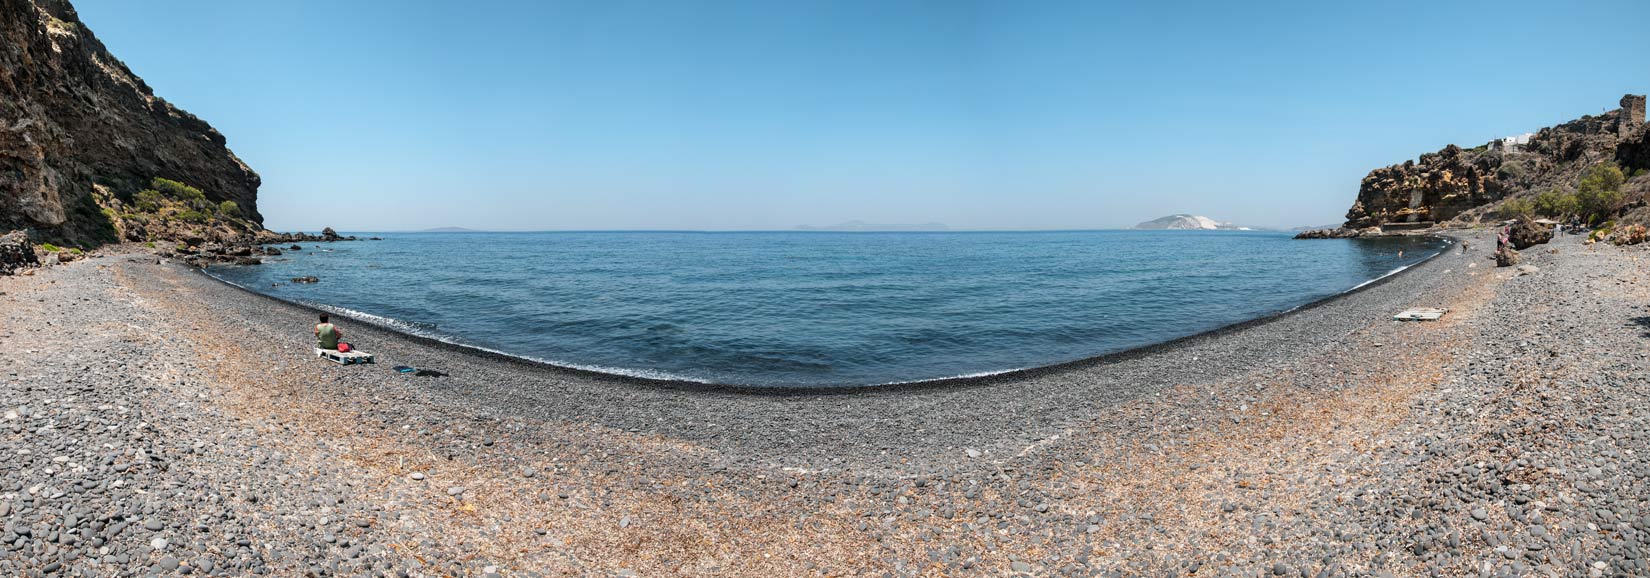 Pláž Chochlaki